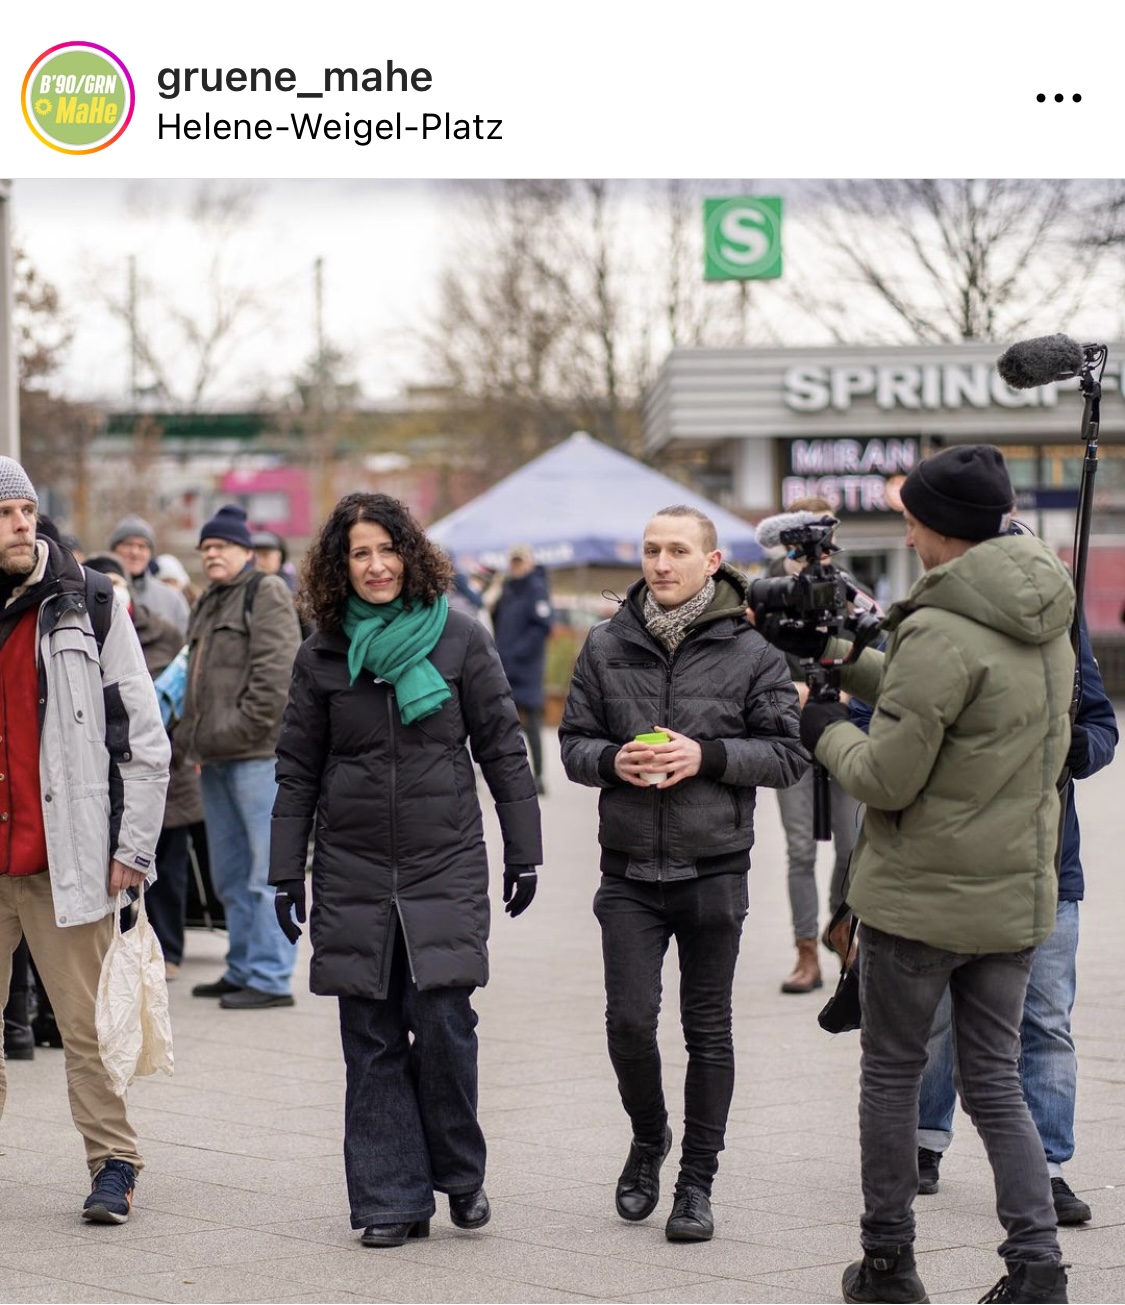 Die Berliner Spitzenkandidatin der Grünen, Bettina Jarasch, verteilte bei der DRK-Hilfsaktion auf dem Helene-Weigel-Platz belegte Brötchen und Äpfel an Bedürftige. © Grüne MaHe/Instagram